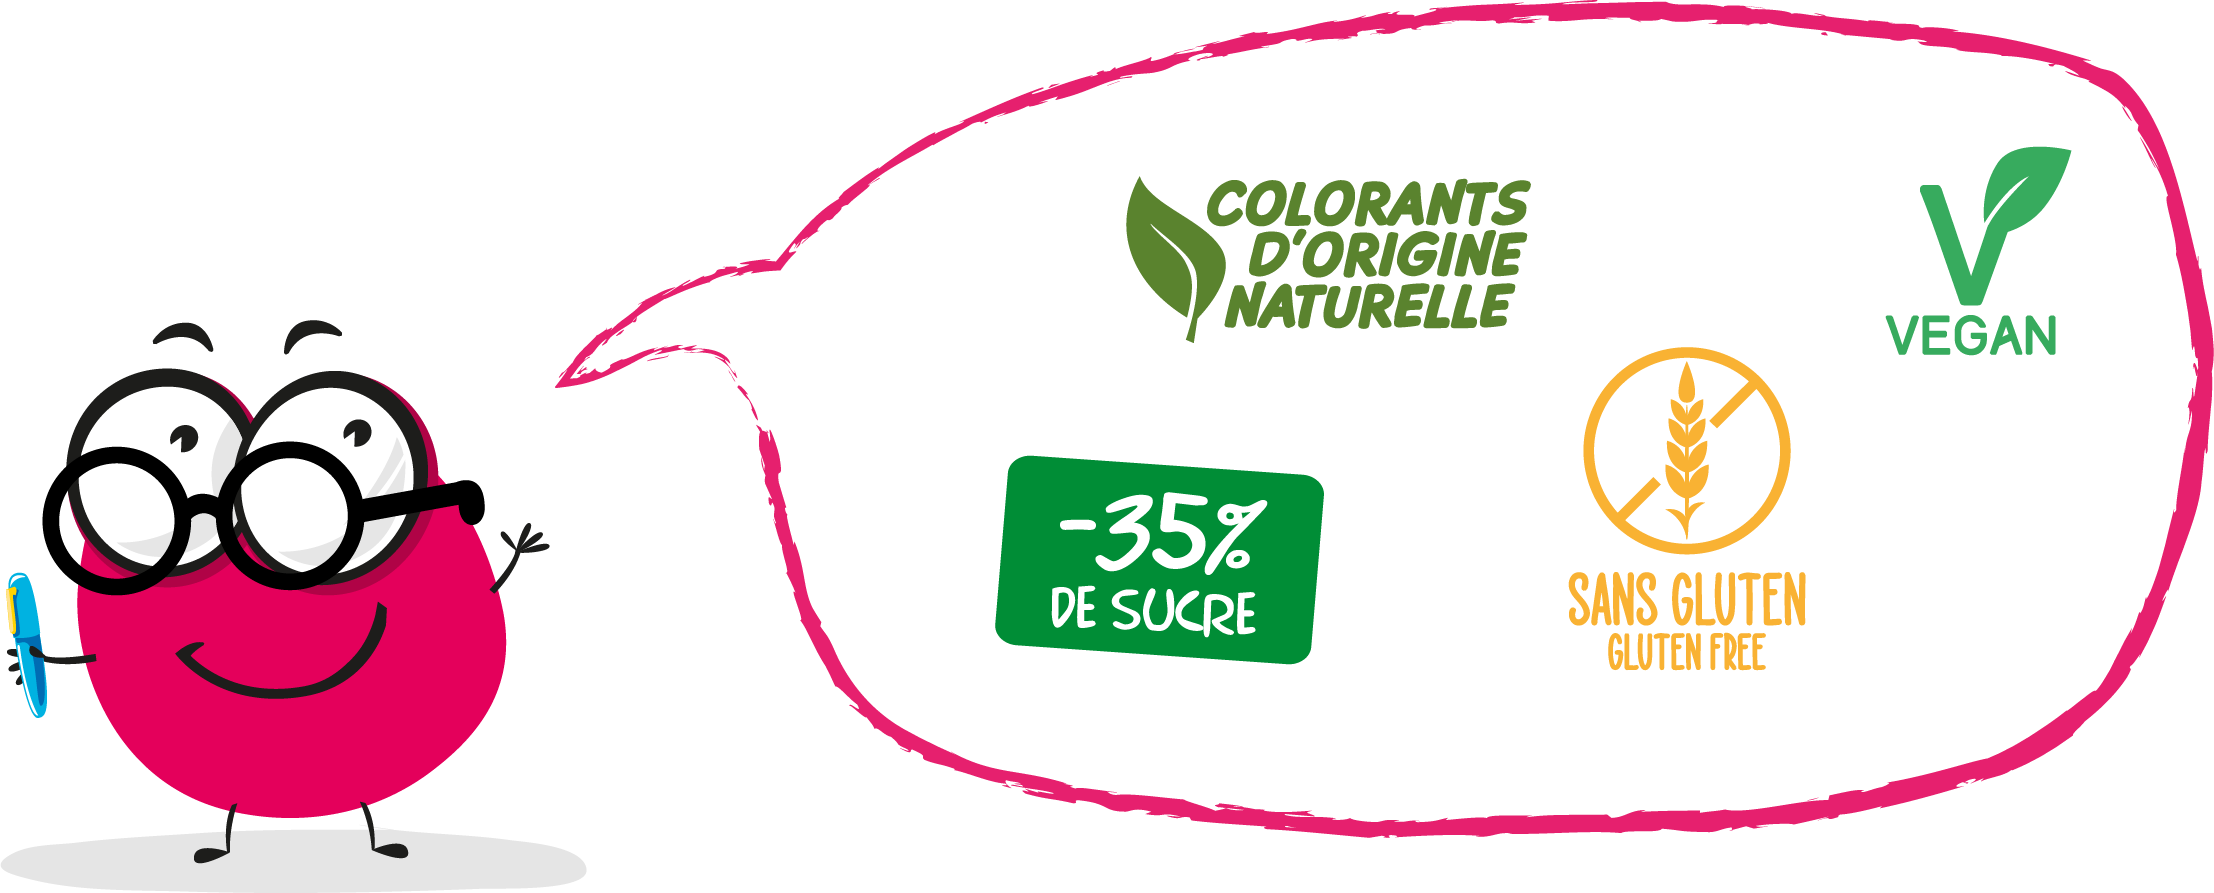 Colorants d'origine naturelle - Vegan - Sans gluten/gluten free - moins 35% de sucre